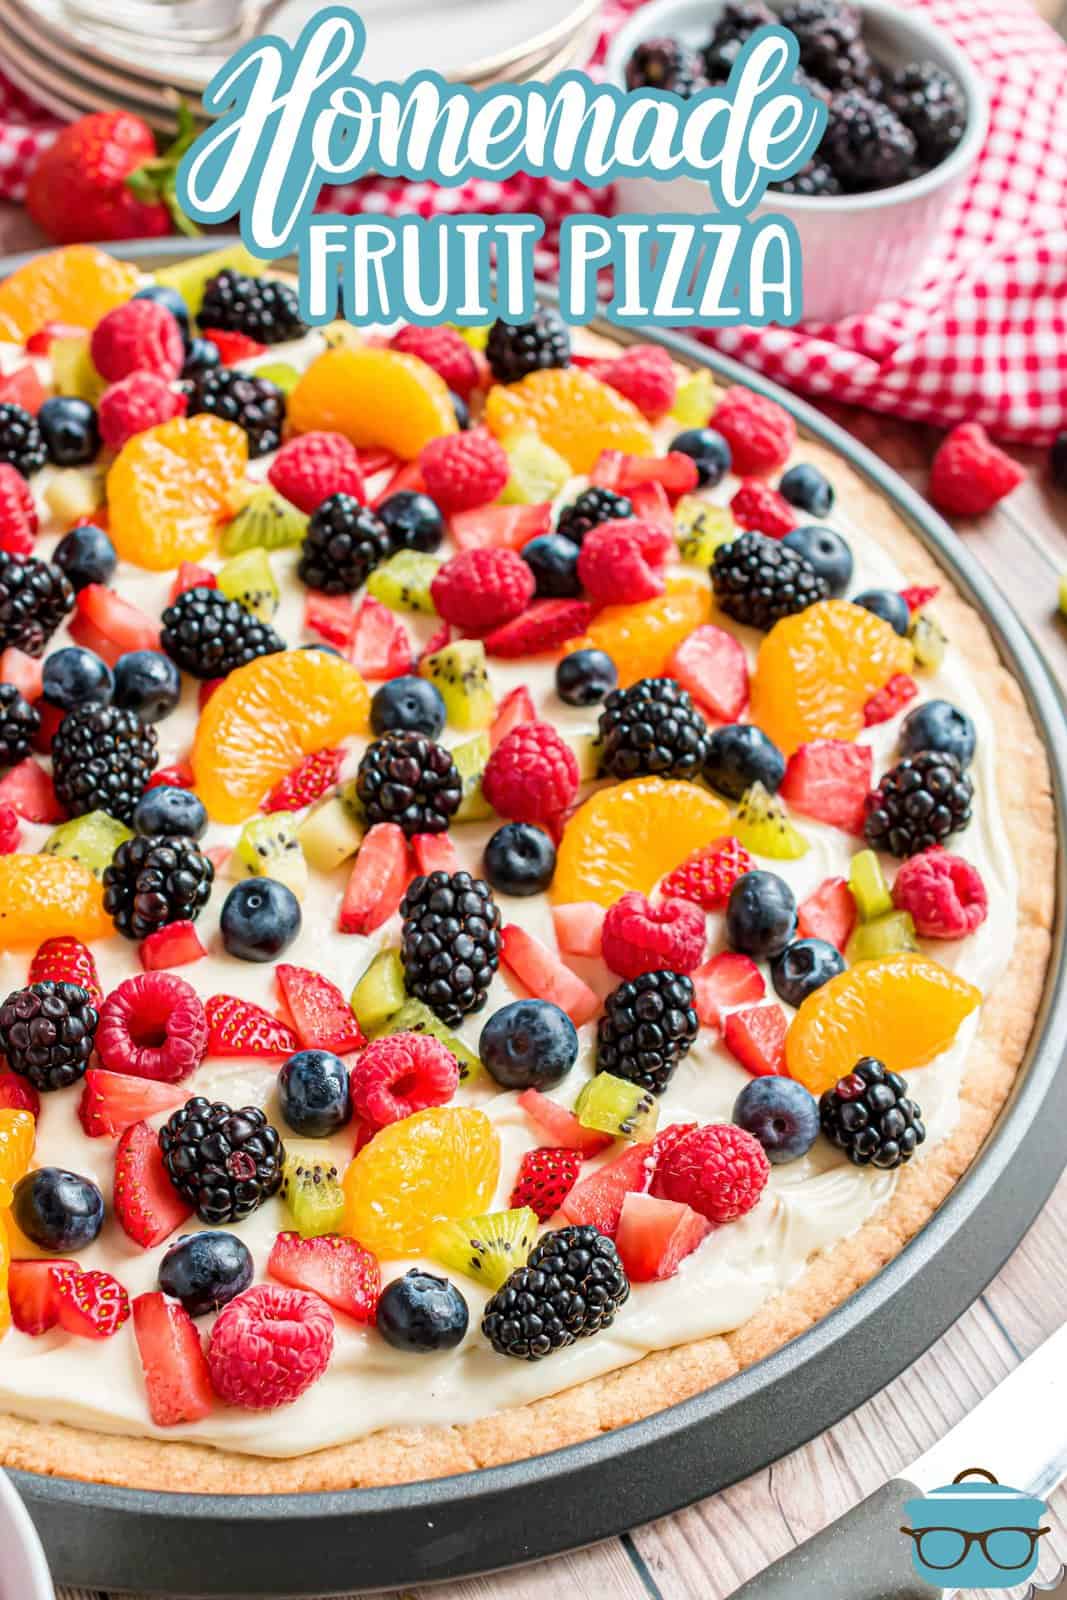 Immagine Pinterest della vista laterale ravvicinata della pizza alla frutta fatta in casa decorata.